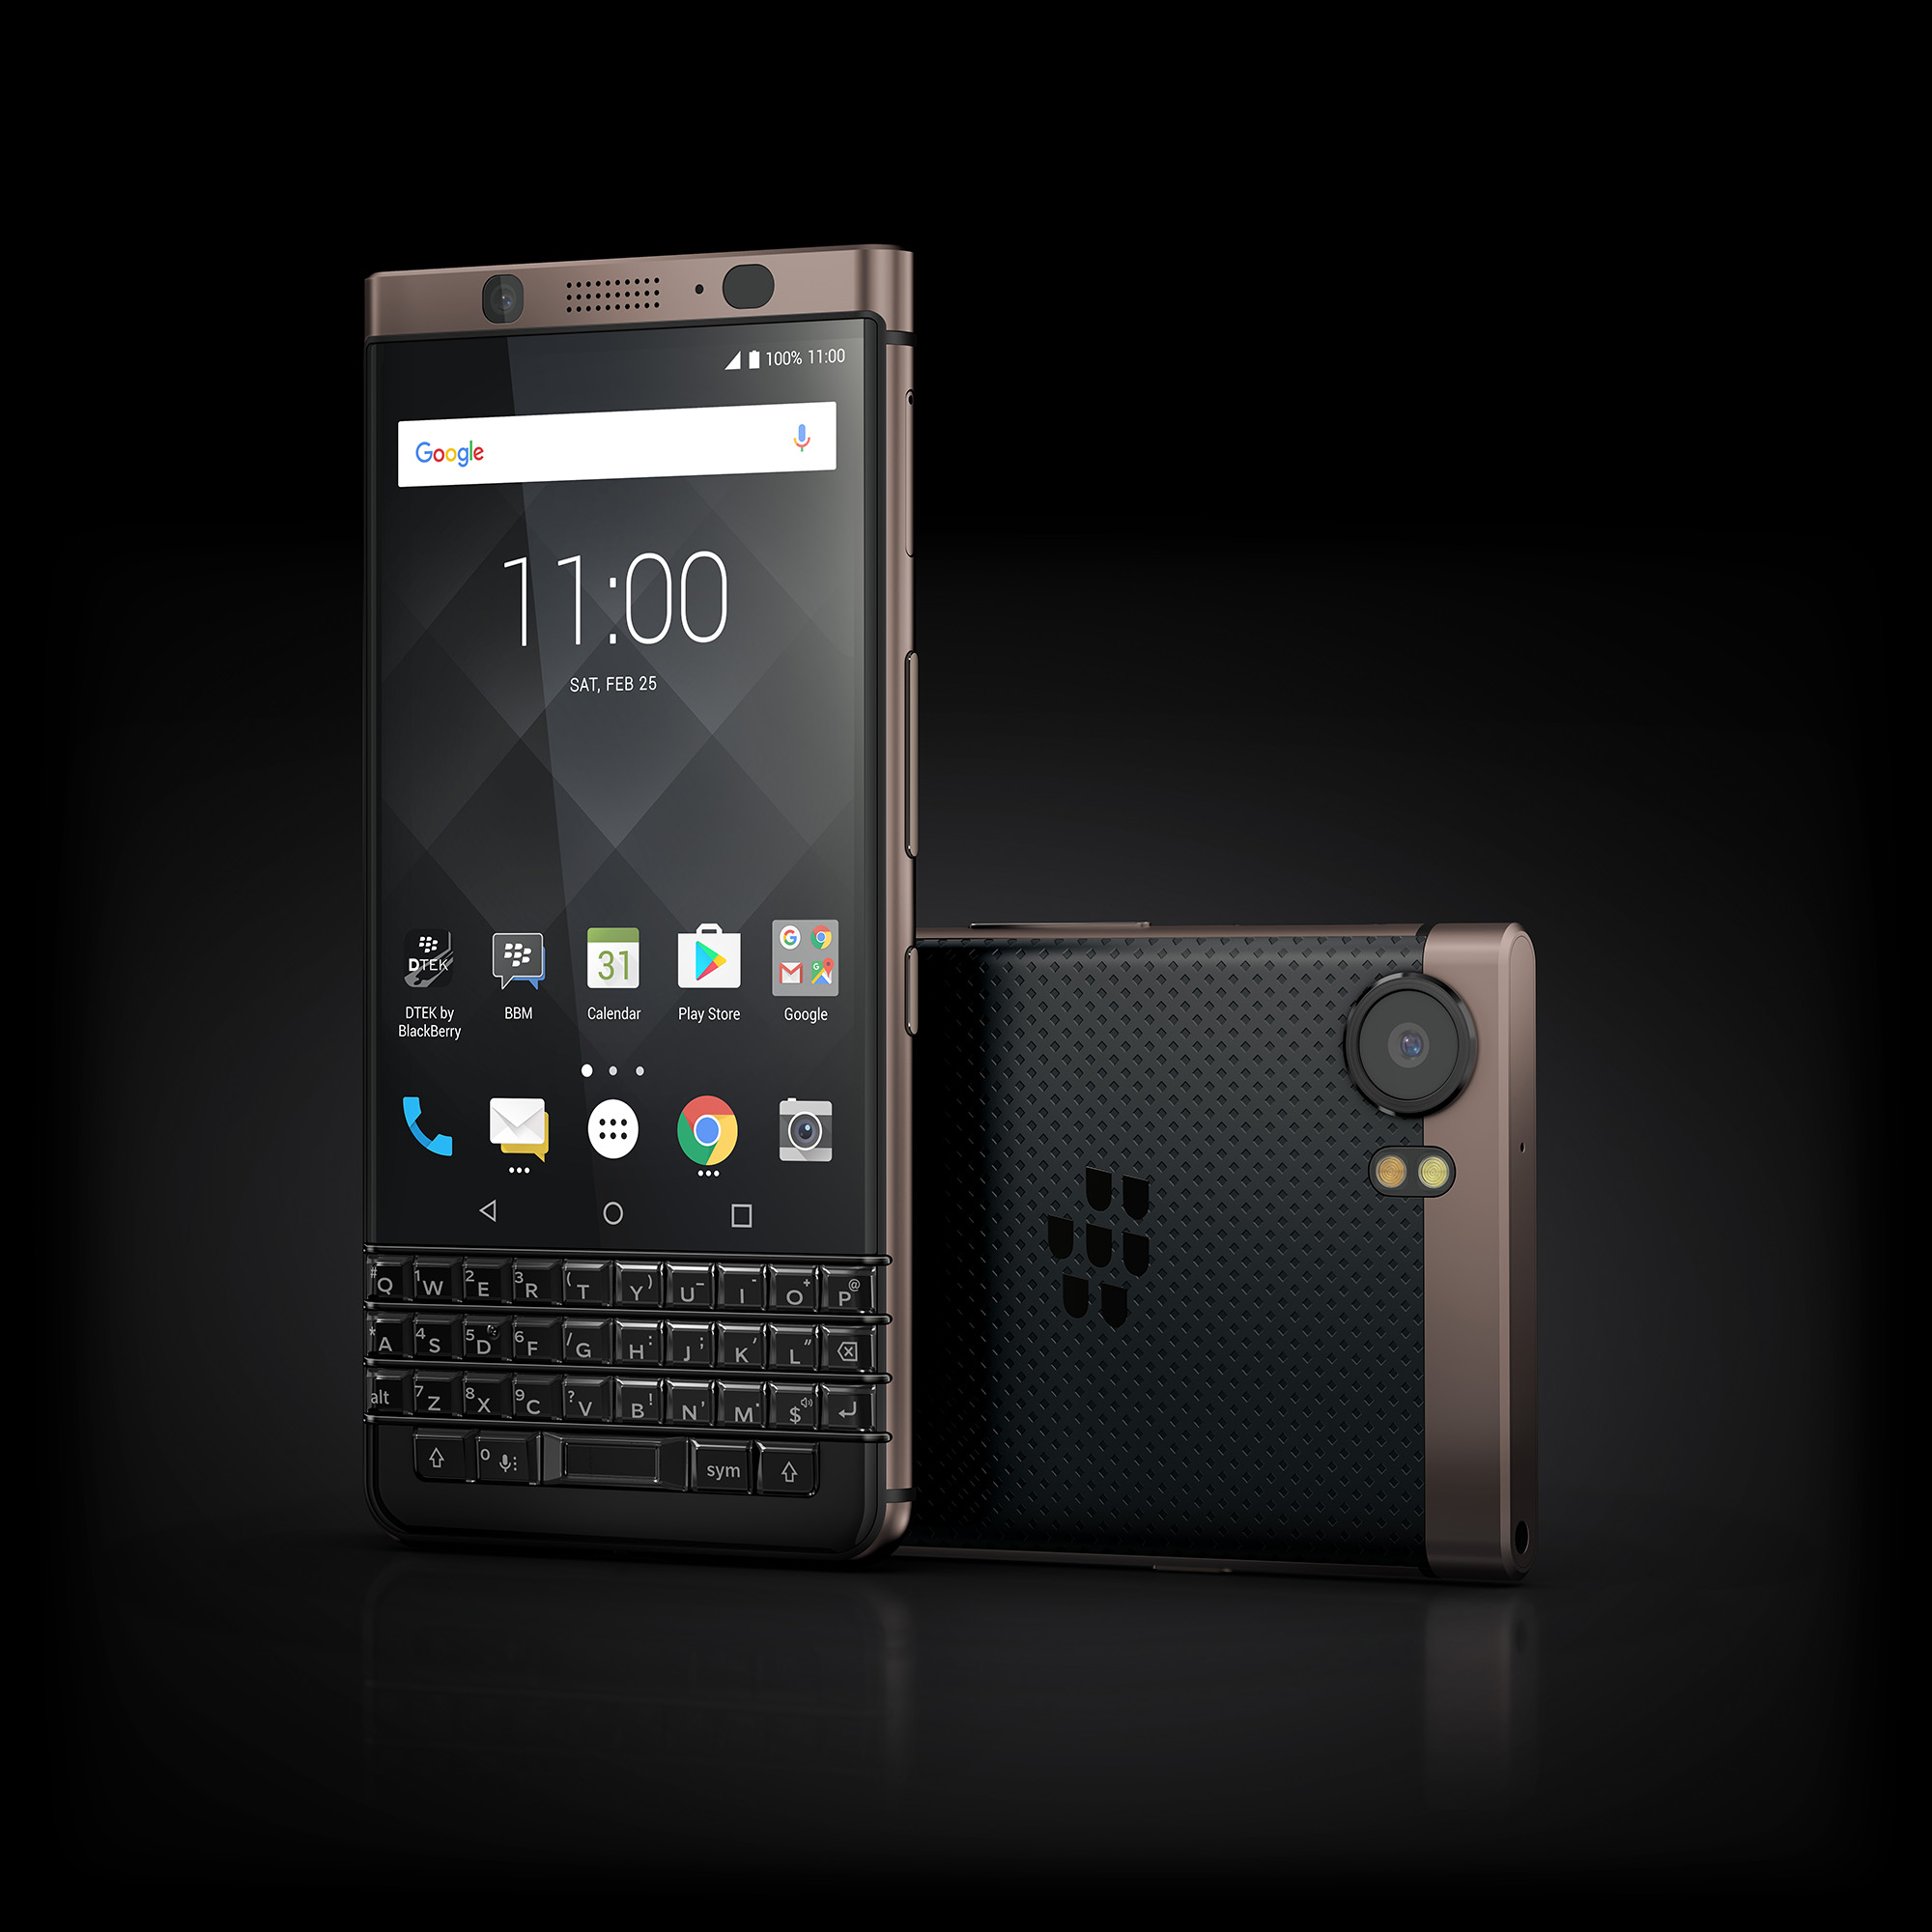 BlackBerry Keyone phiên bản giới hạn Bronze Edition chính thức ra mắt